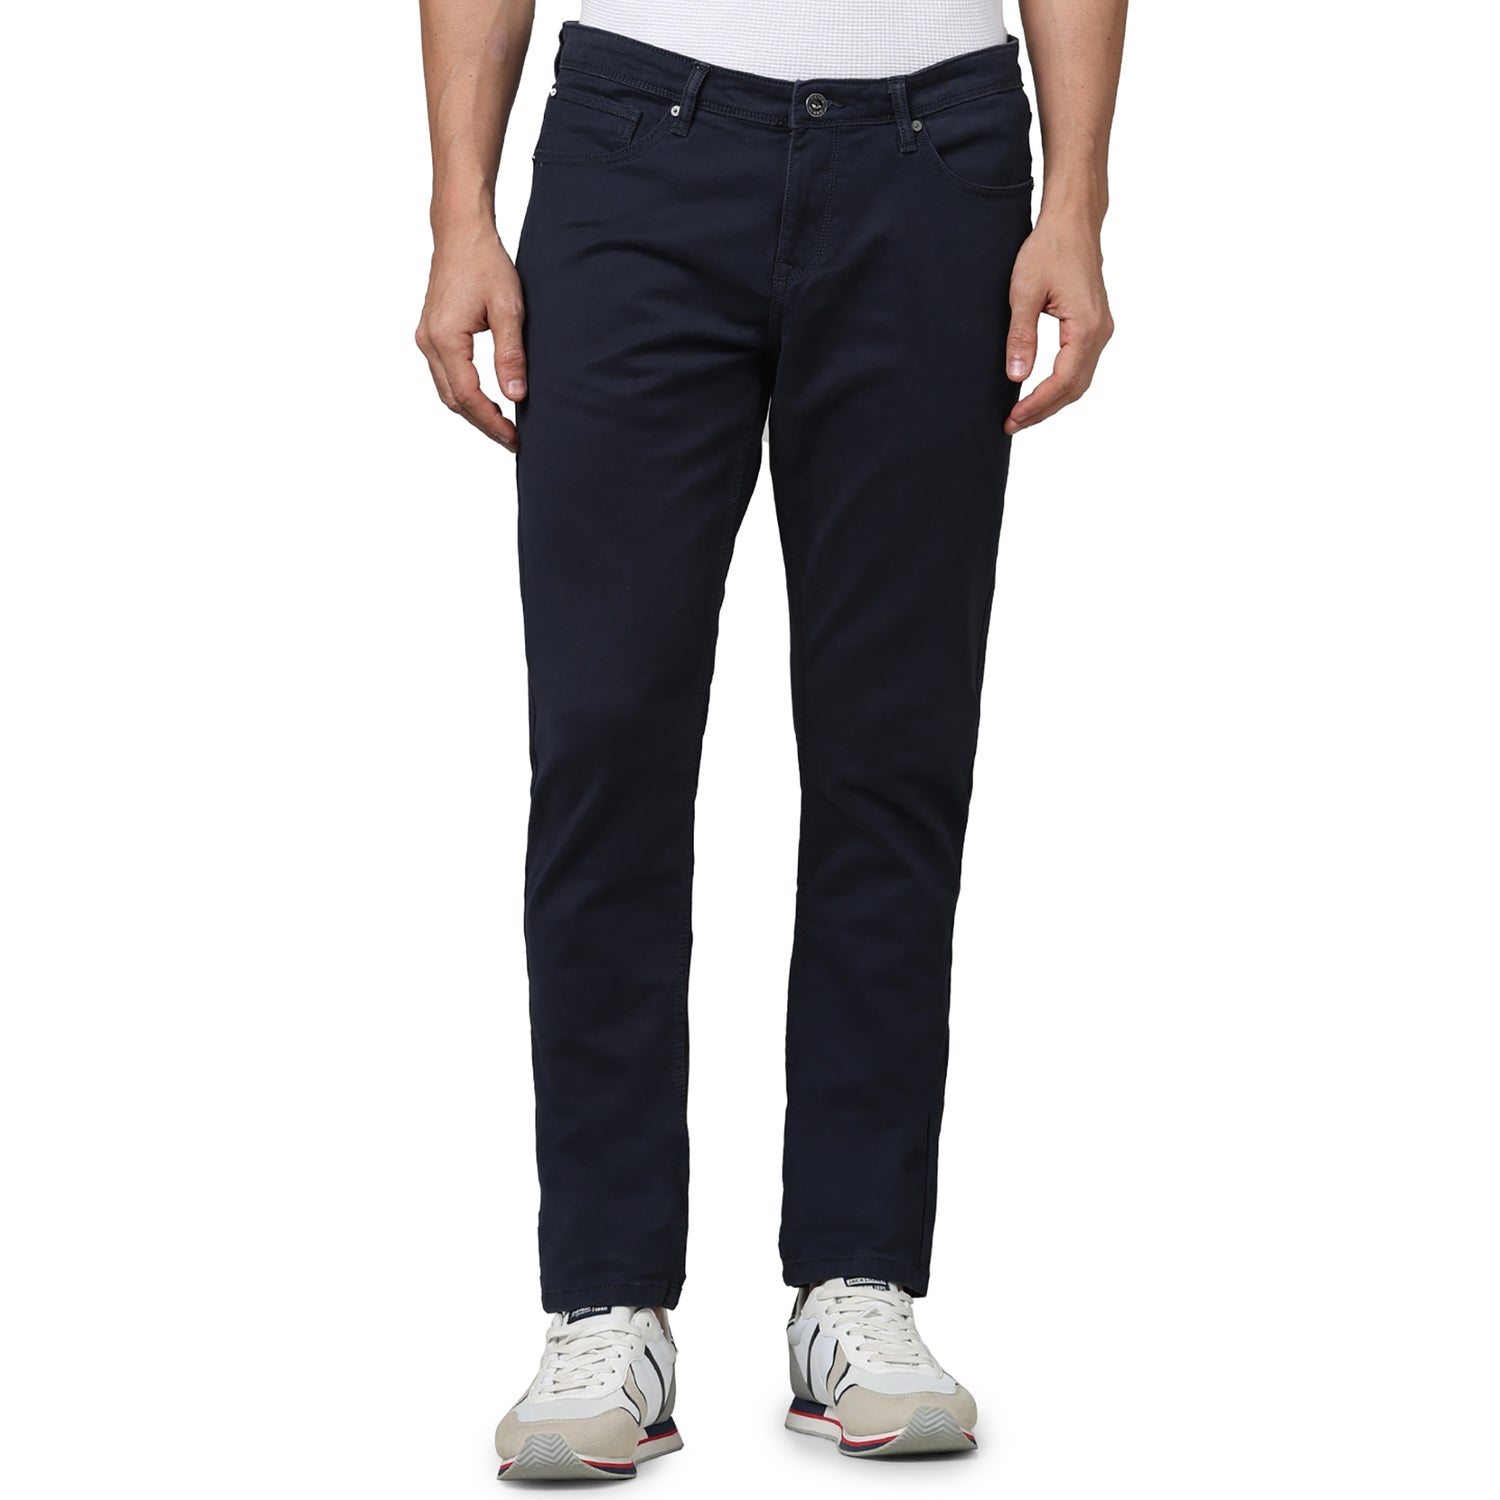 Men's Grey Solid Slim Fit Cotton Knit Denim Jeans (GOCOLKNIT25)